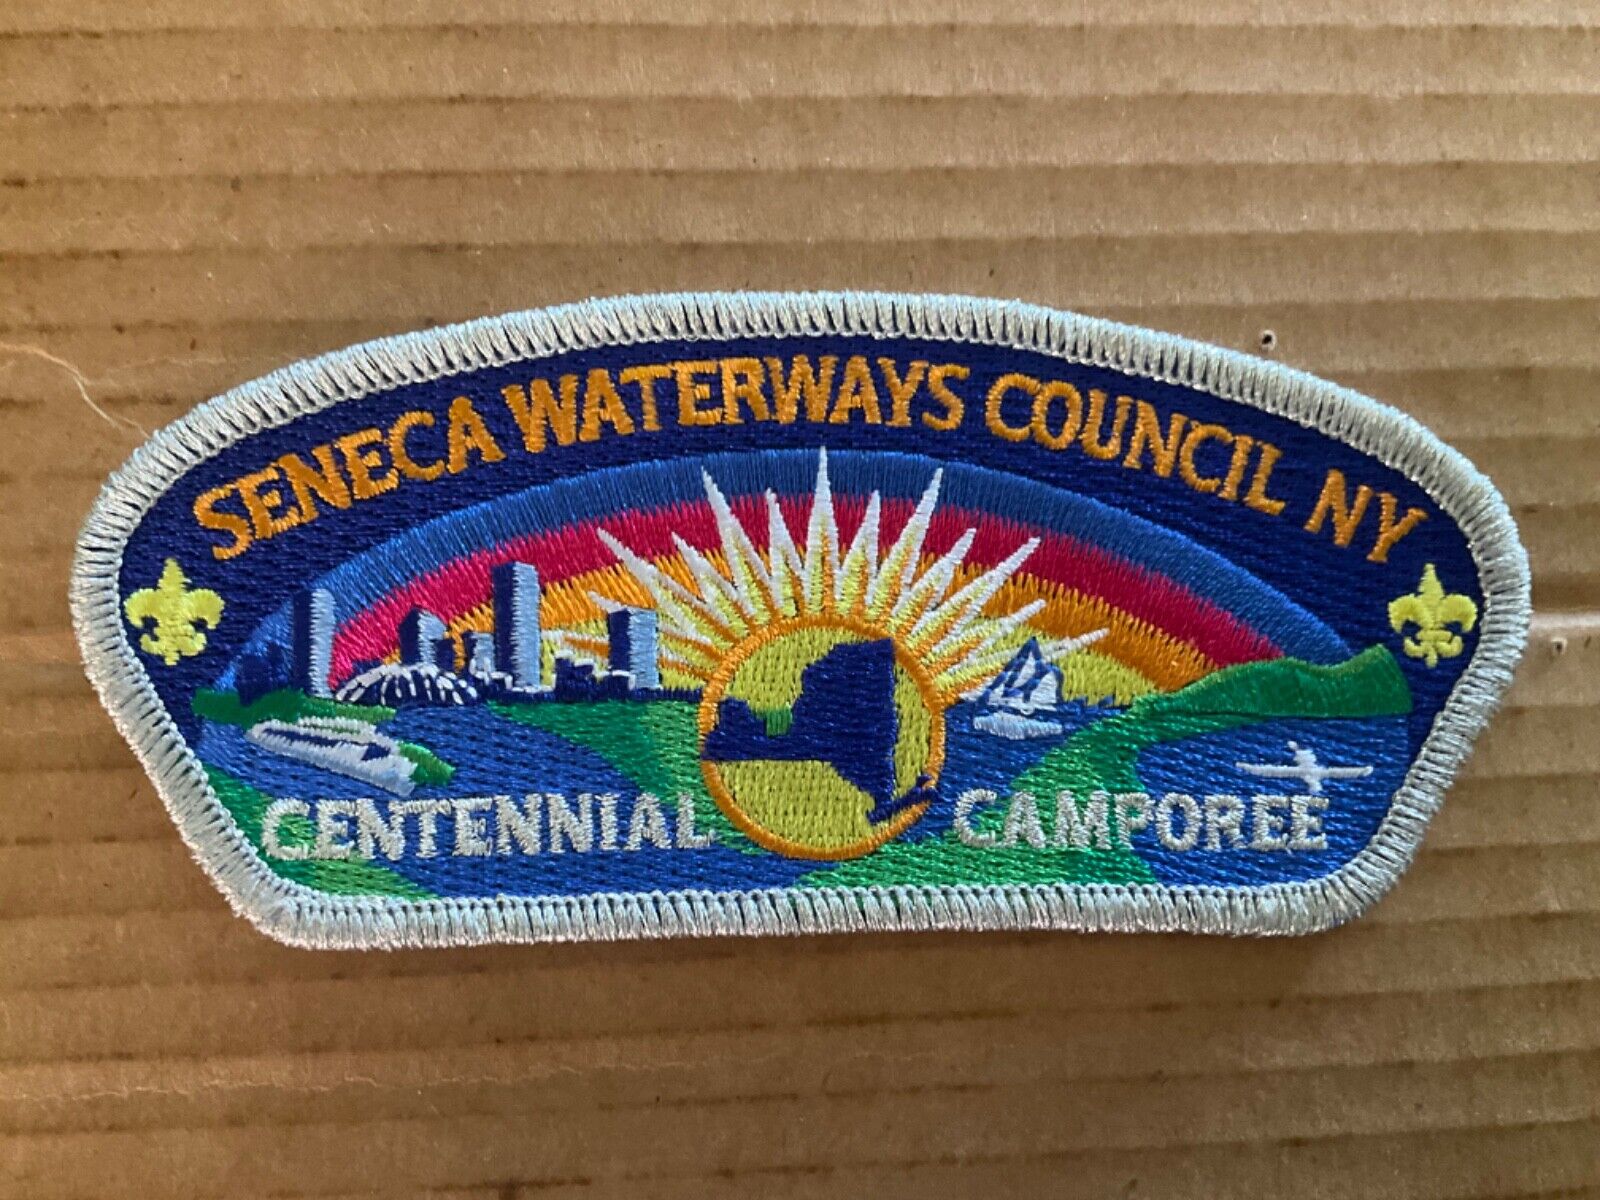 Seneca Waterways Council CSP Centennial Camporee B